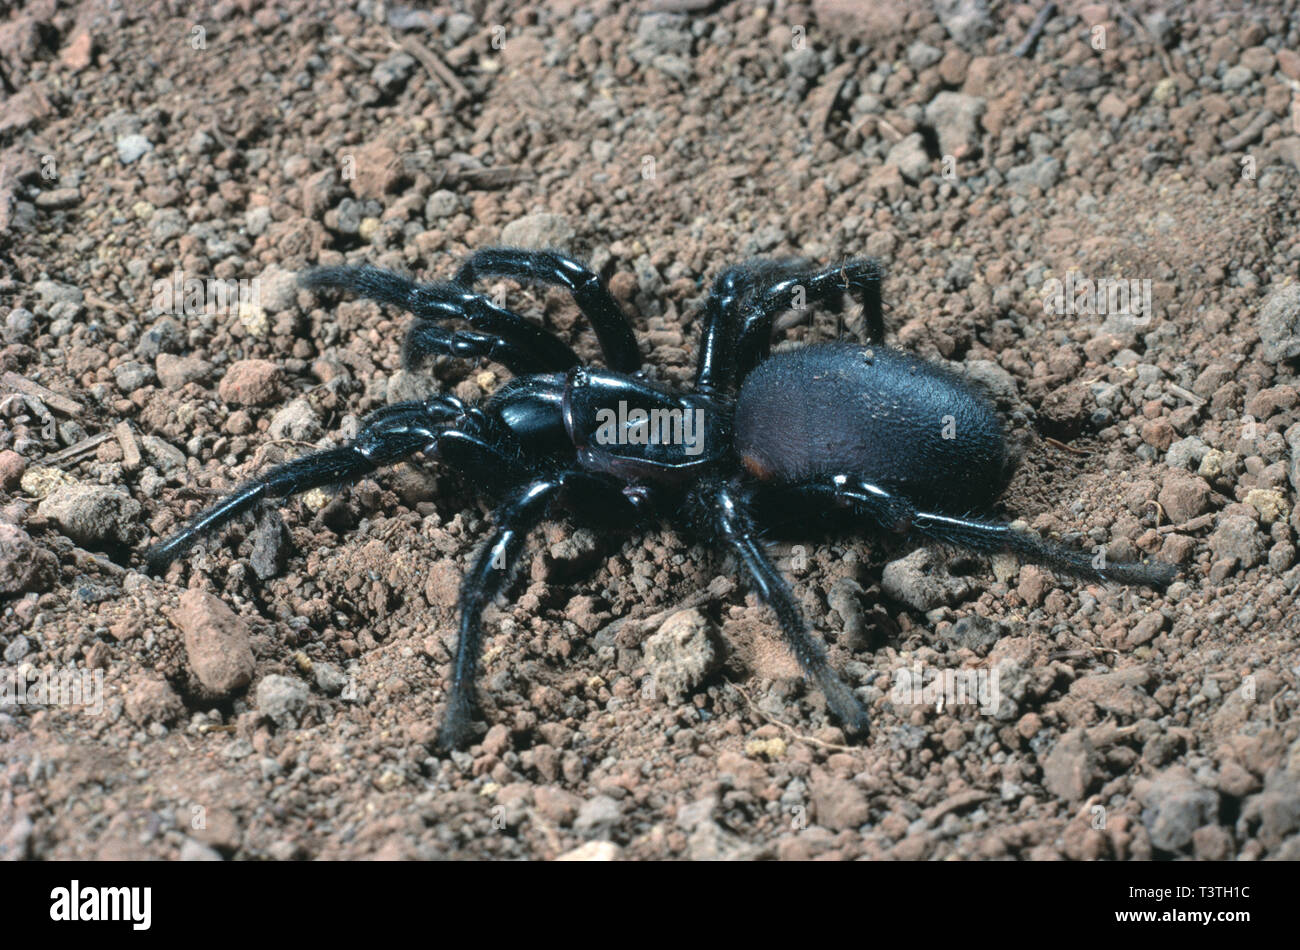 La faune australienne. Les arachnides. Sydney Funnel-web spider. Atrax robustus. Banque D'Images